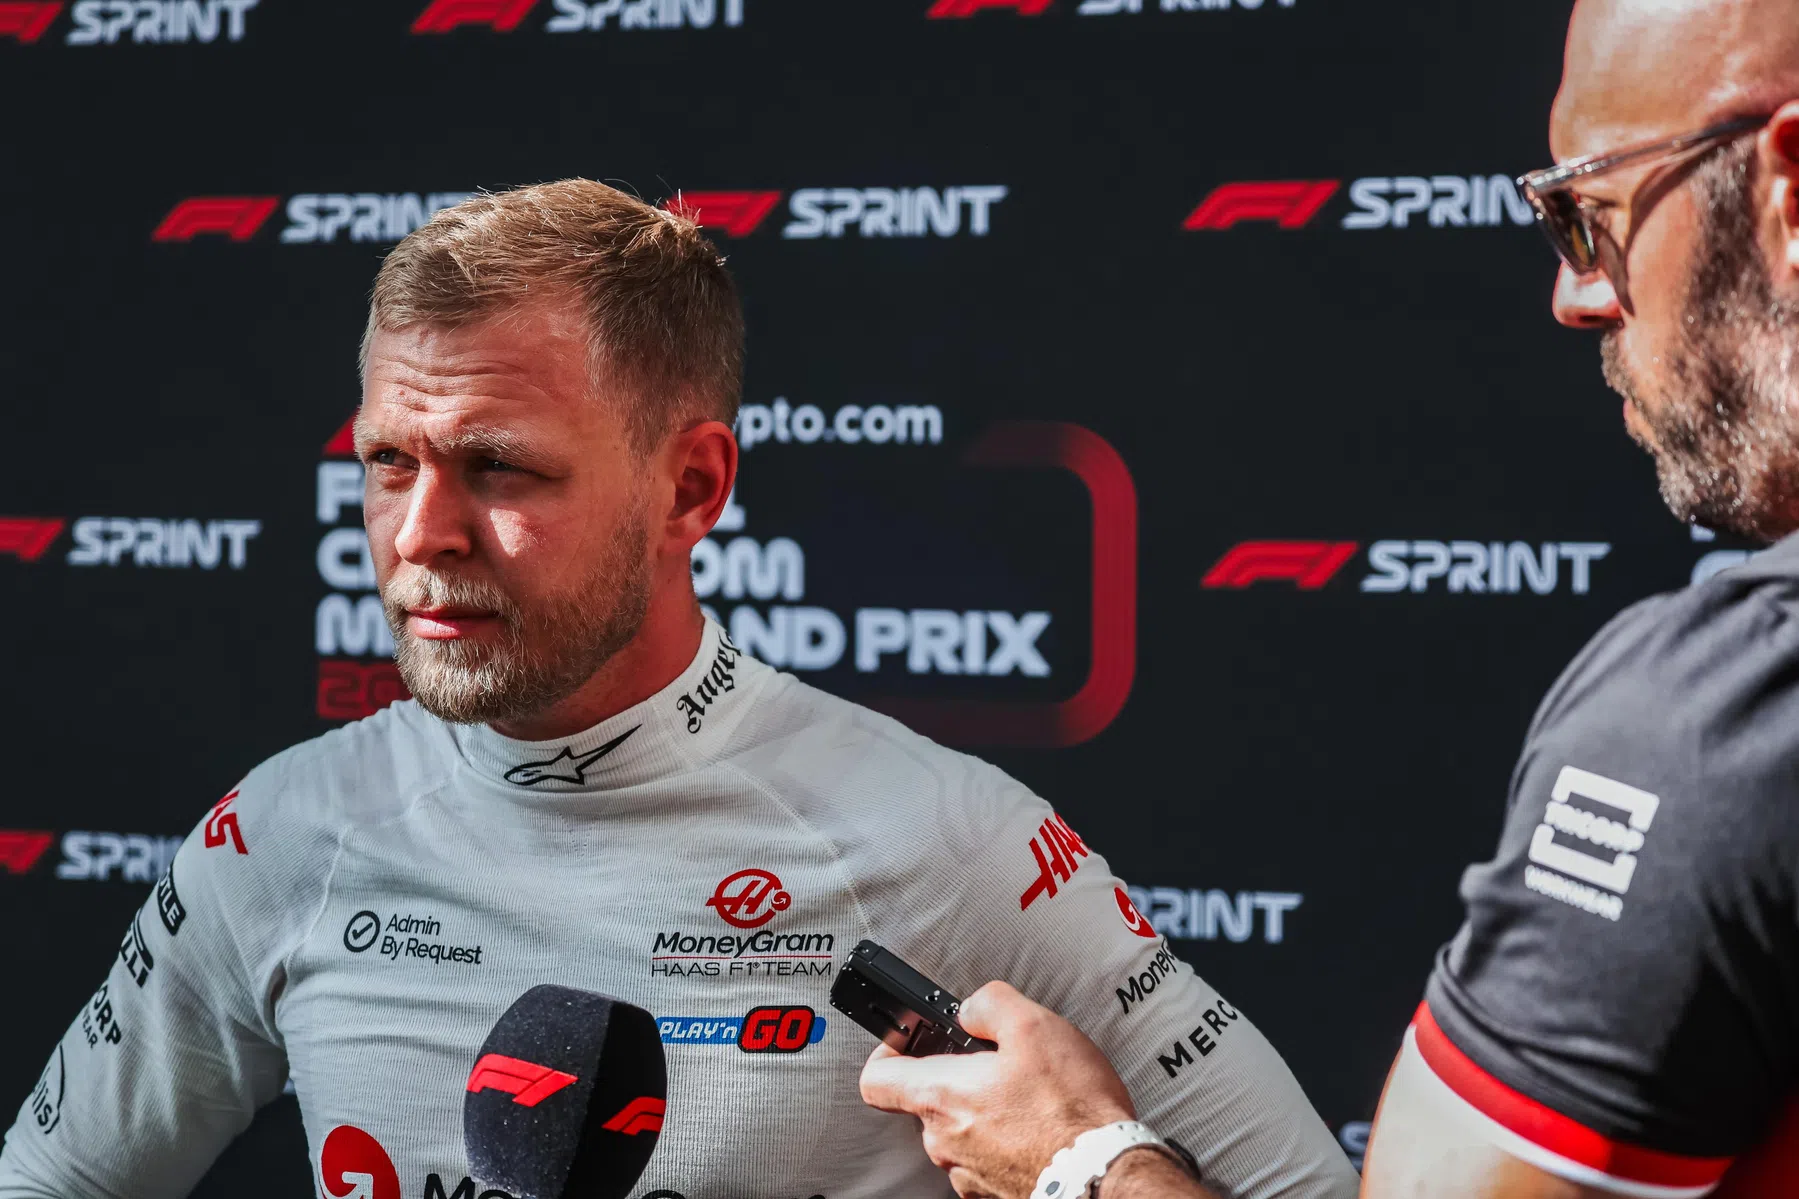 Reação de Magnussen após as penalidades durante a corrida de sprint em Miami